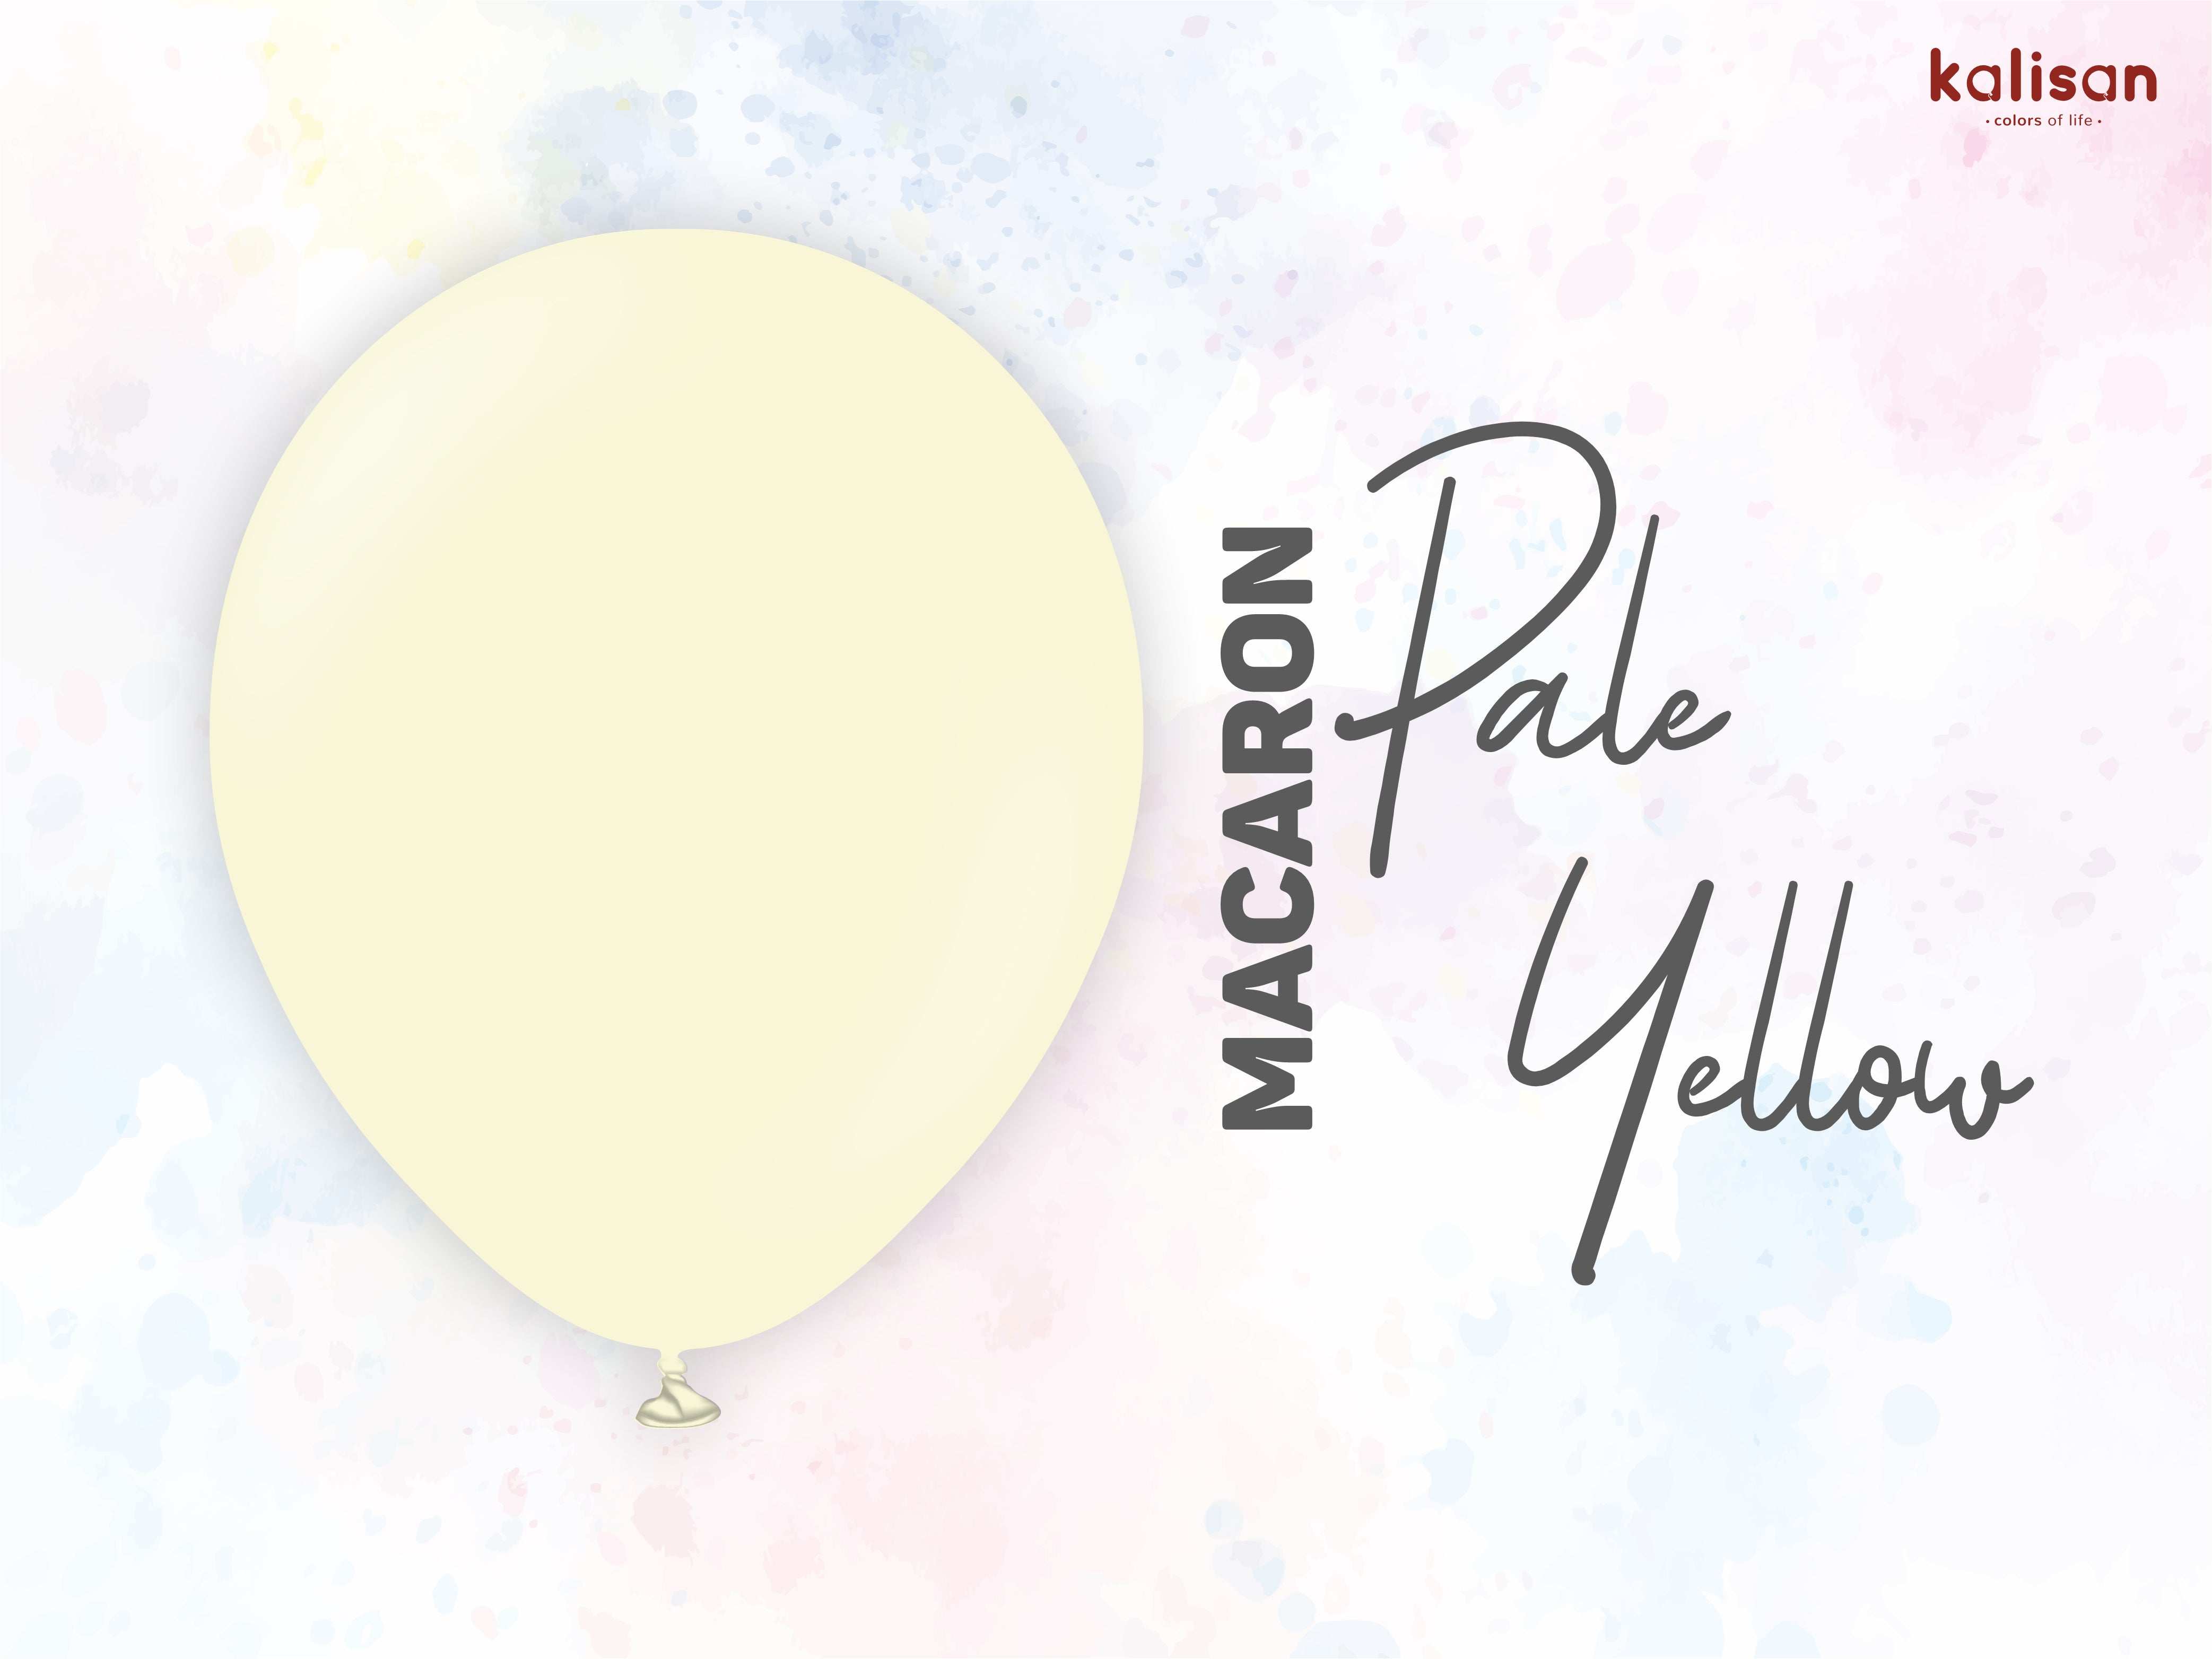 Kalisan Macaron Pale Yellow